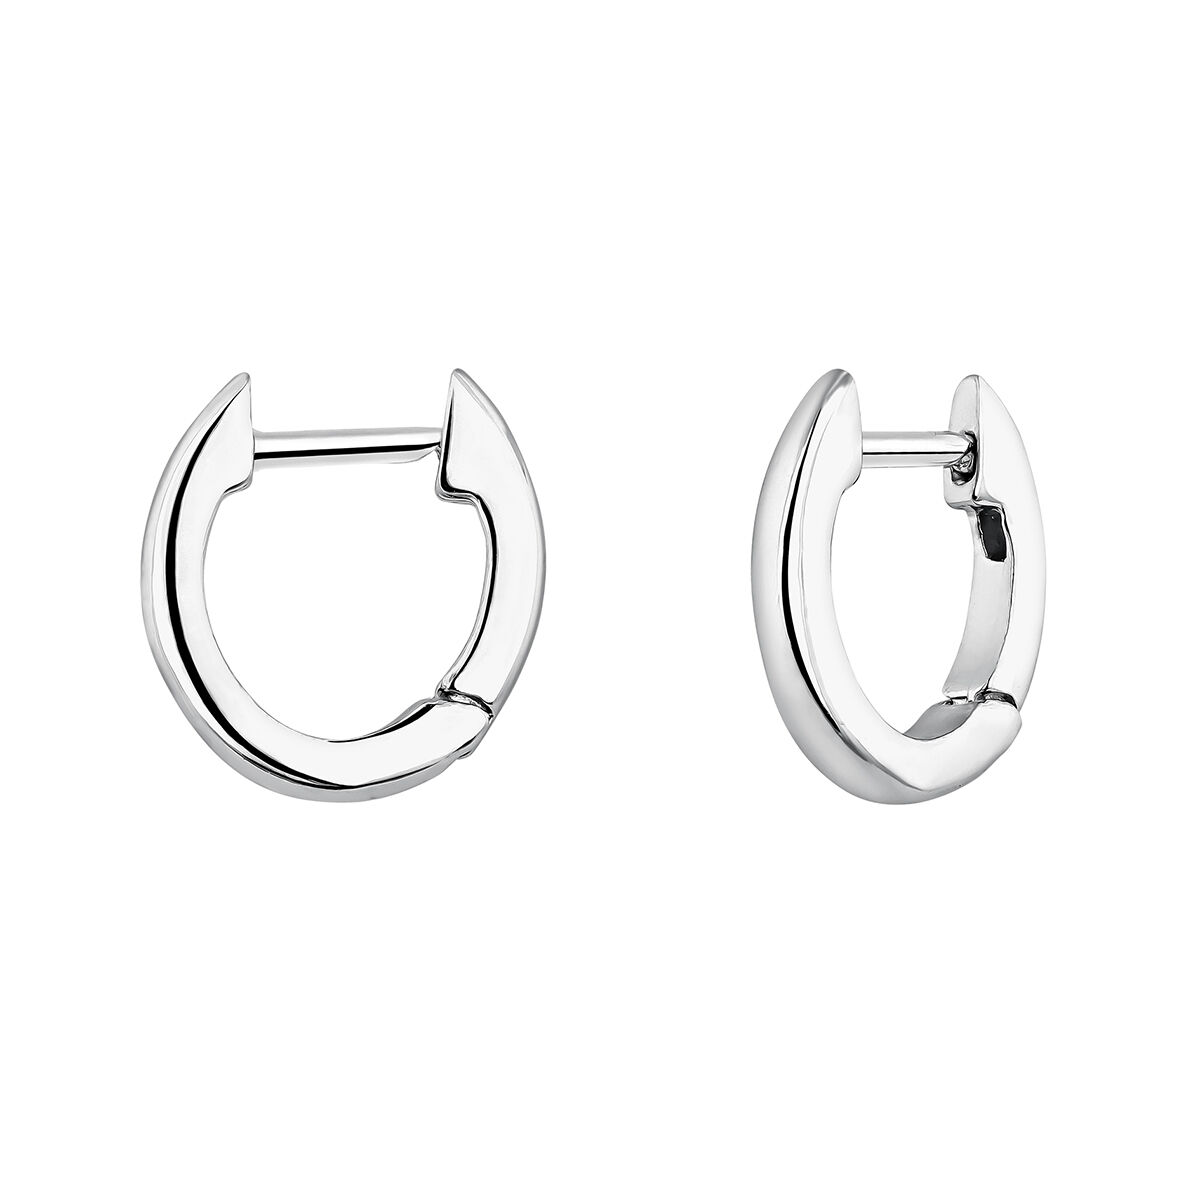 Small silver hoop earrings  , J04648-01, hi-res